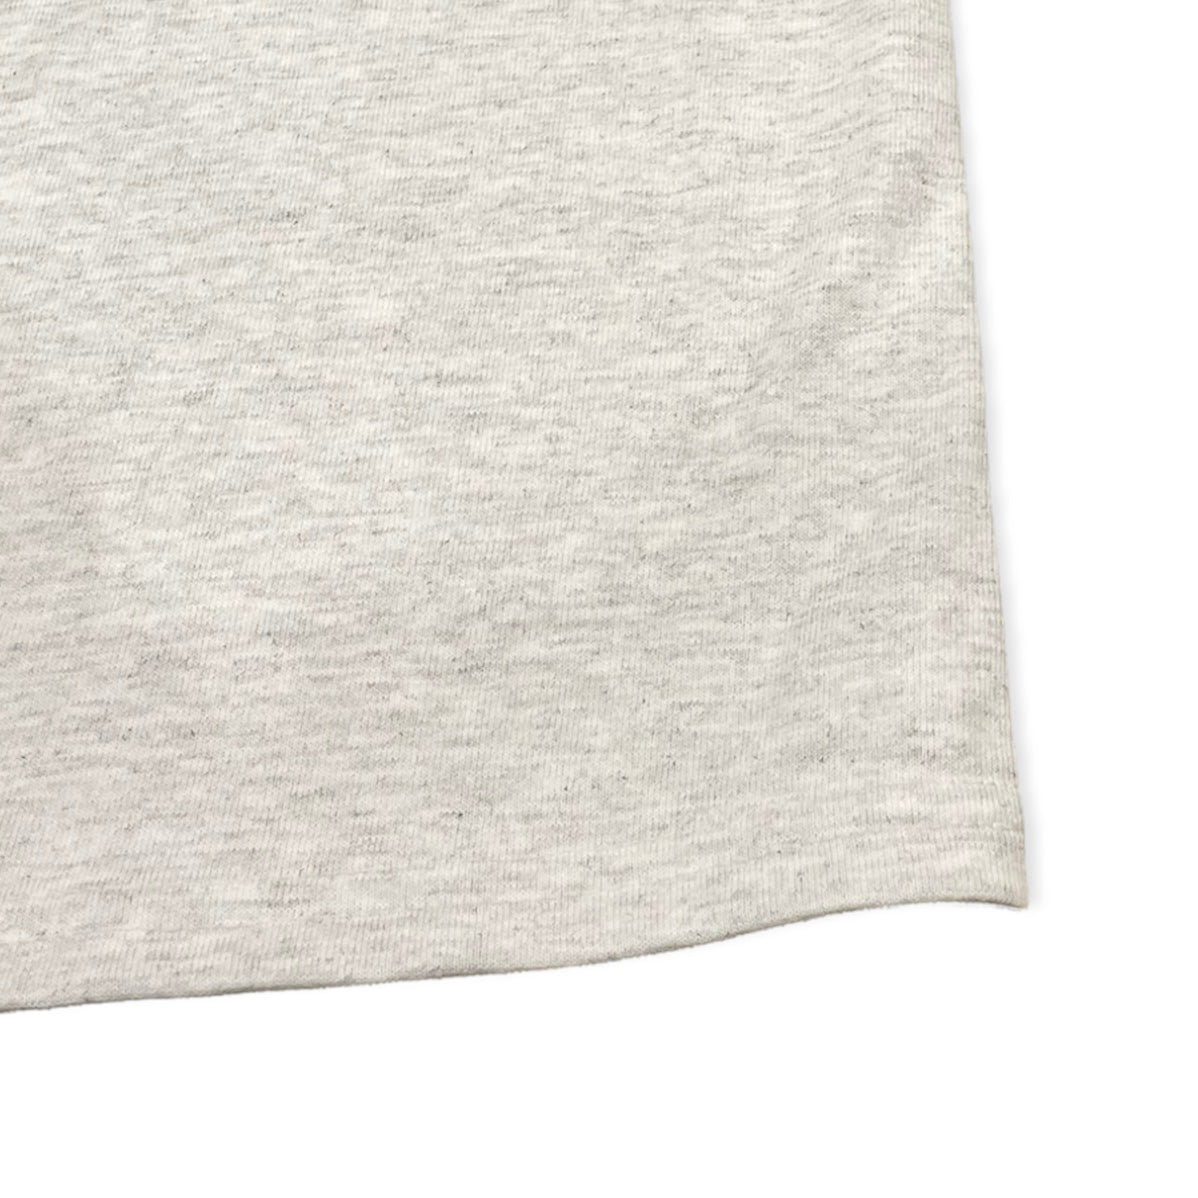 【UNION originals - ユニオンオリジナルス】Classic Logo Long Sleeve T-shirt / Gray (ロンT/グレー)